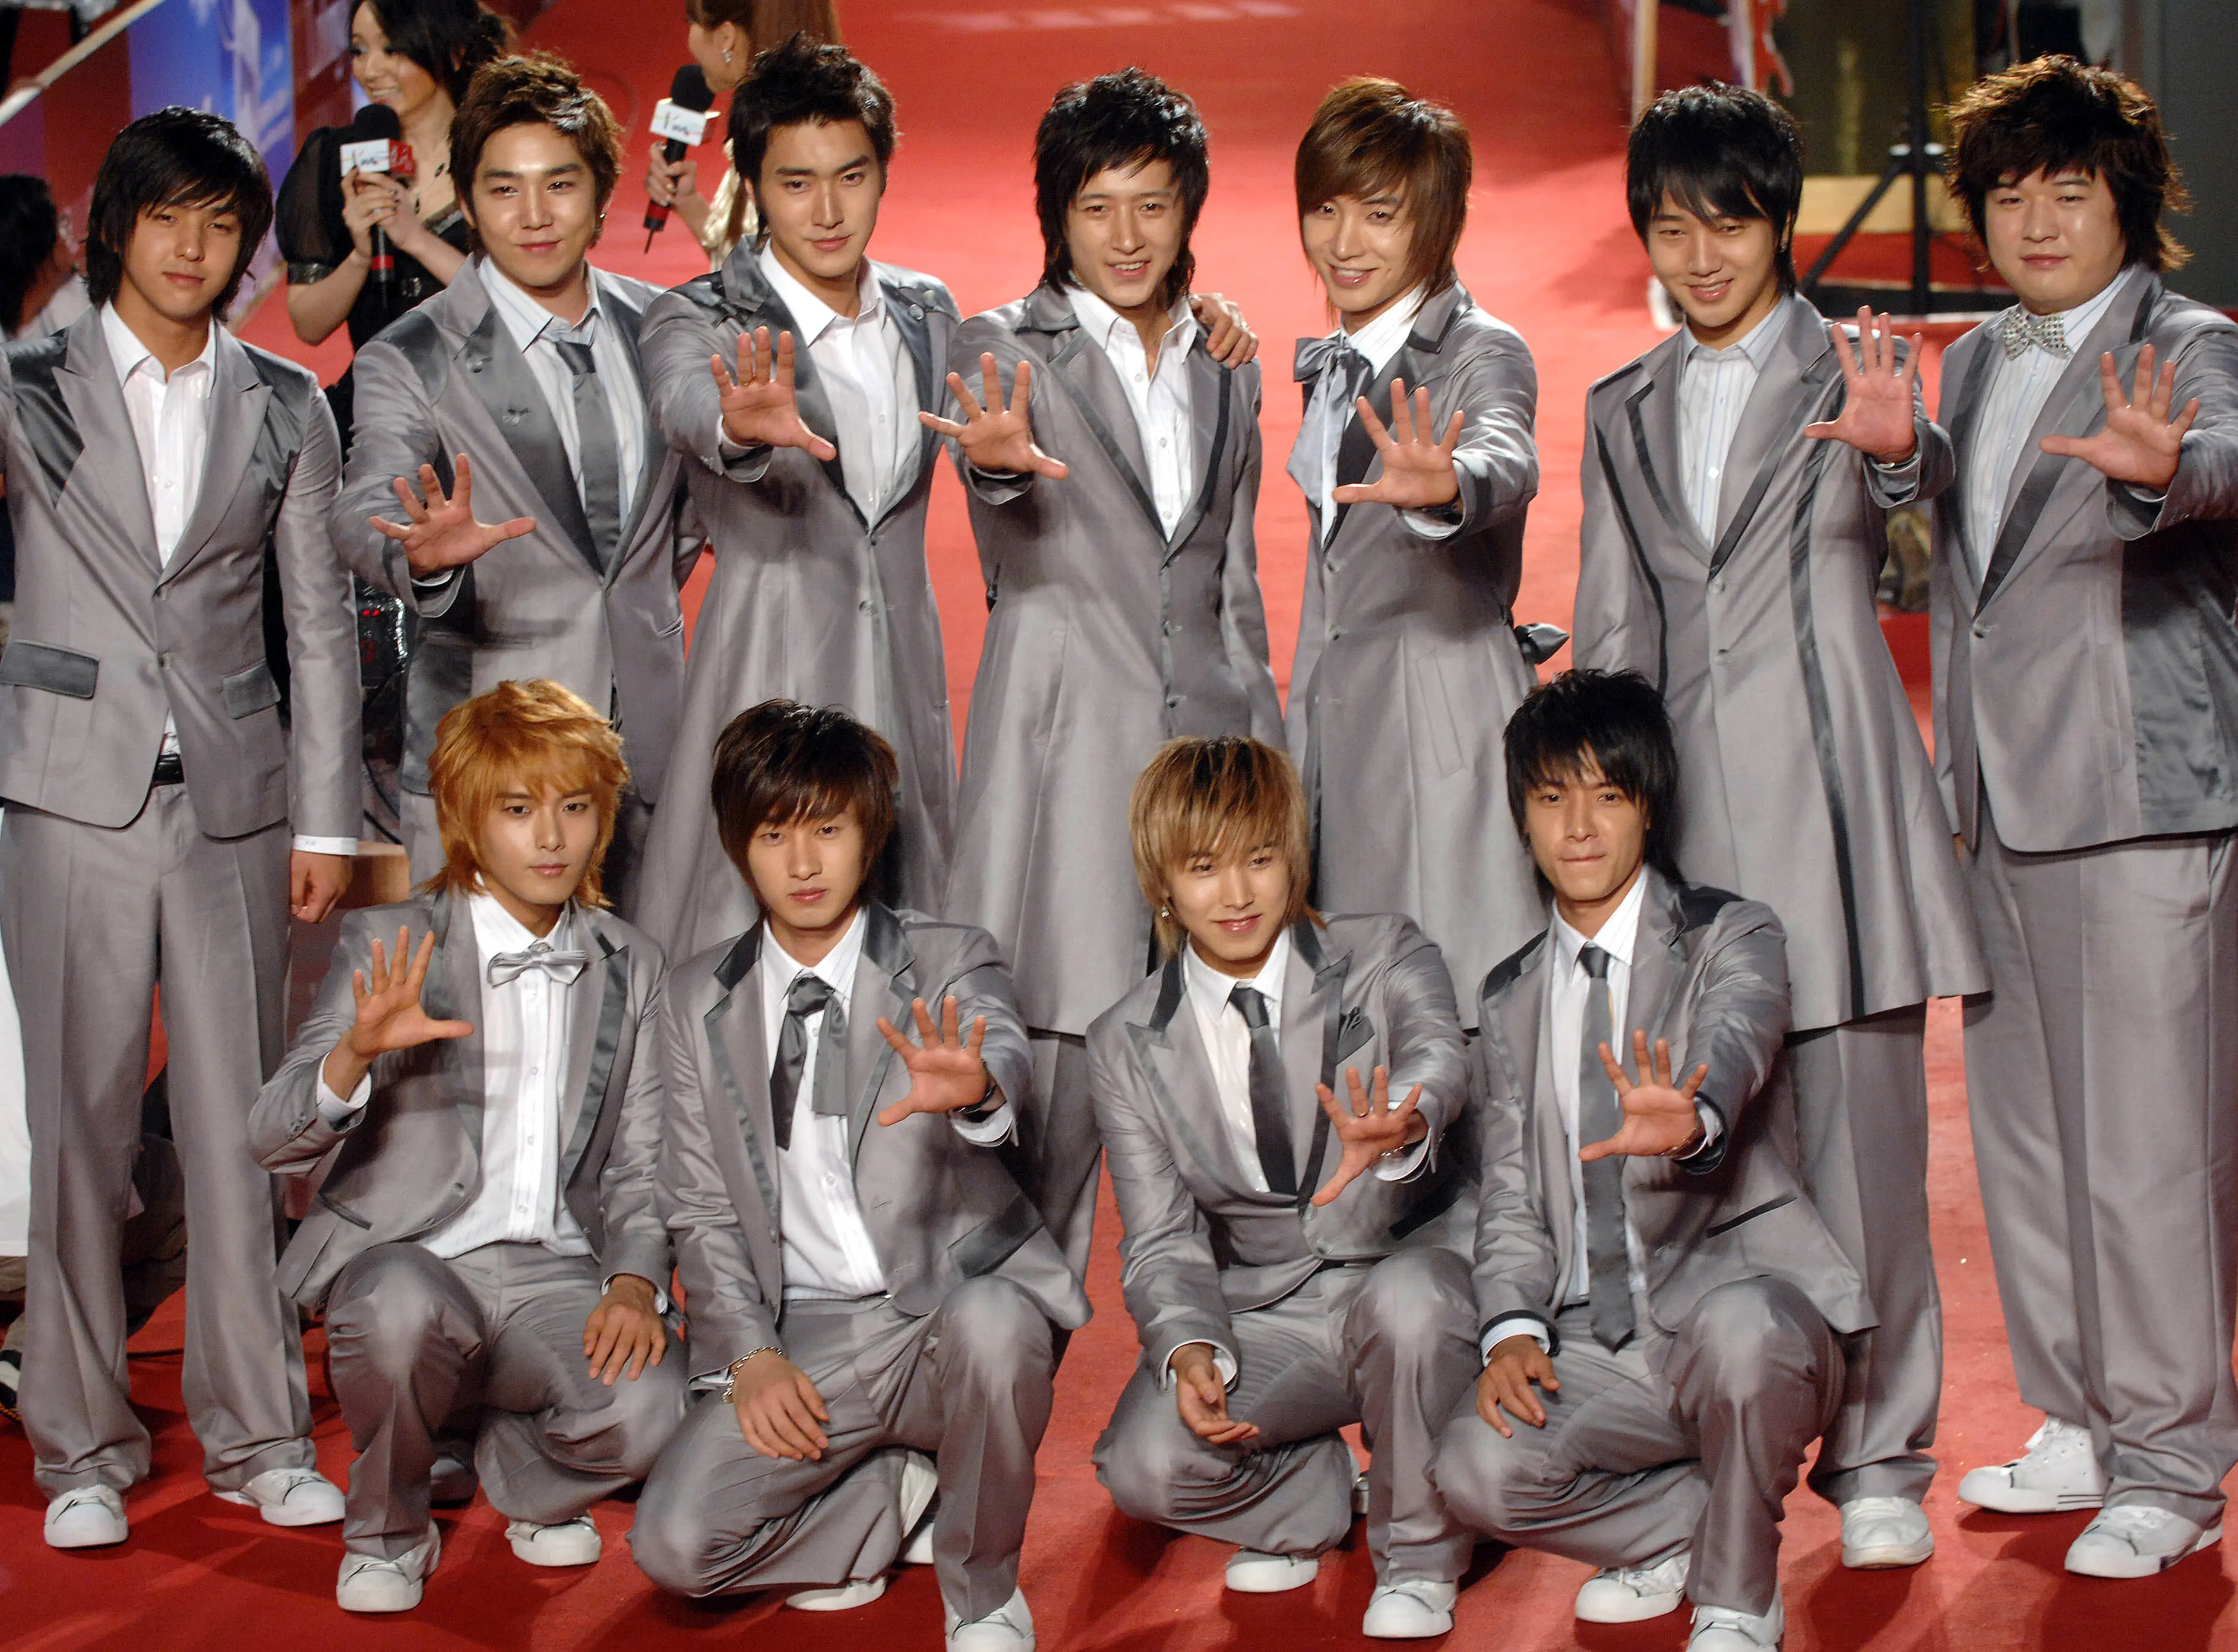 Super Junior (AFP/Bintang.com)